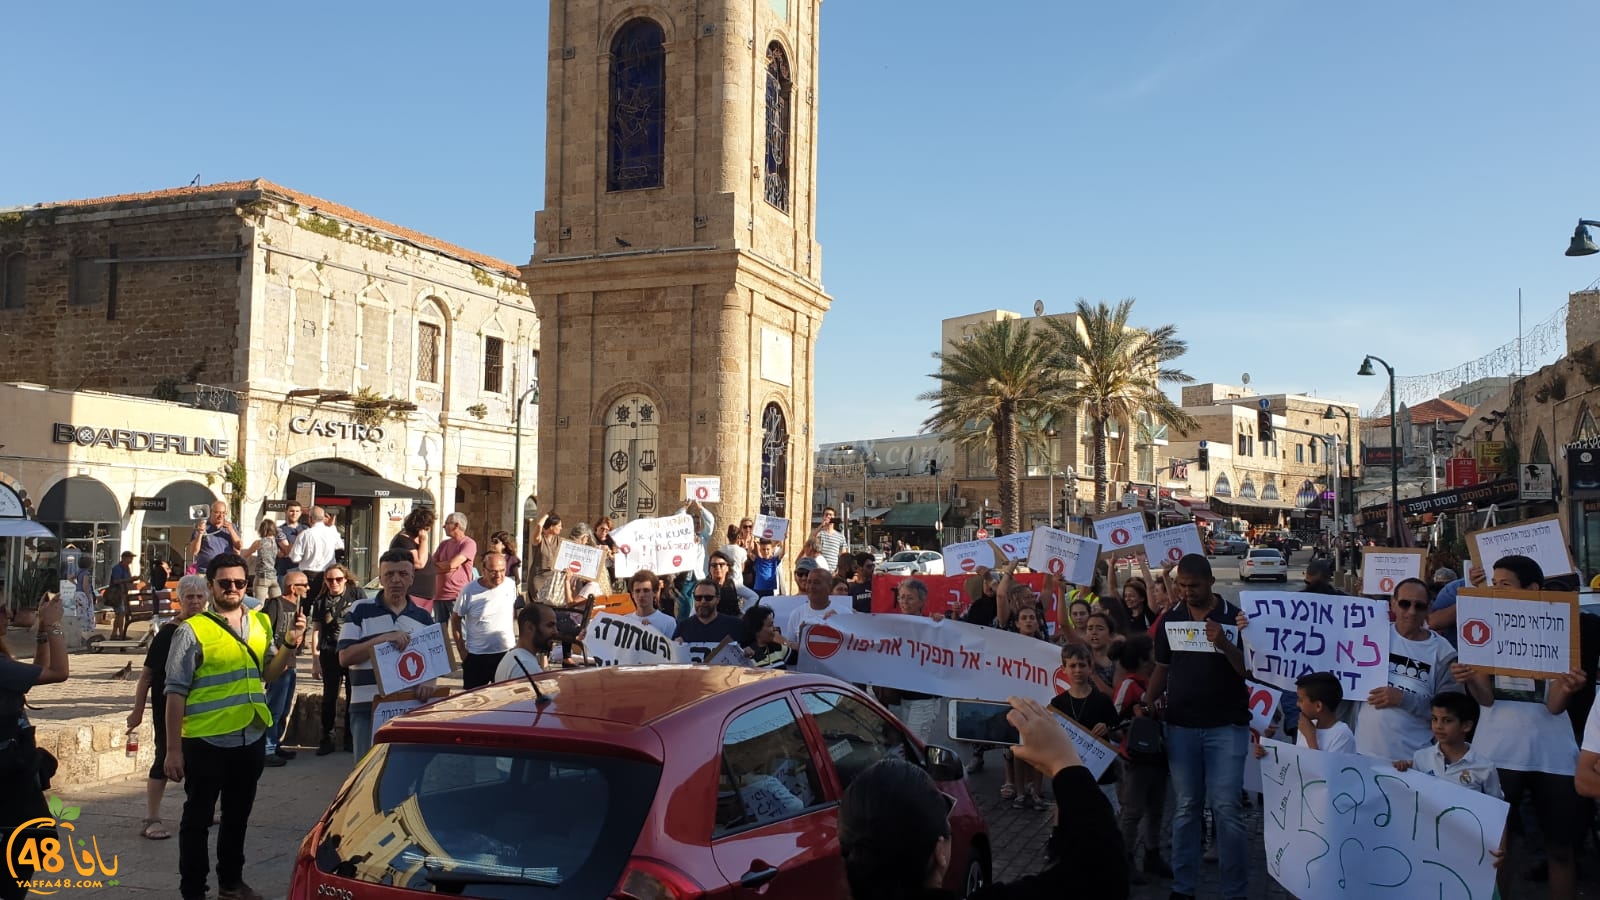 فيديو: تظاهرة بمدينة يافا احتجاجاً على قرار إغلاق شارع شديروت يروشلايم